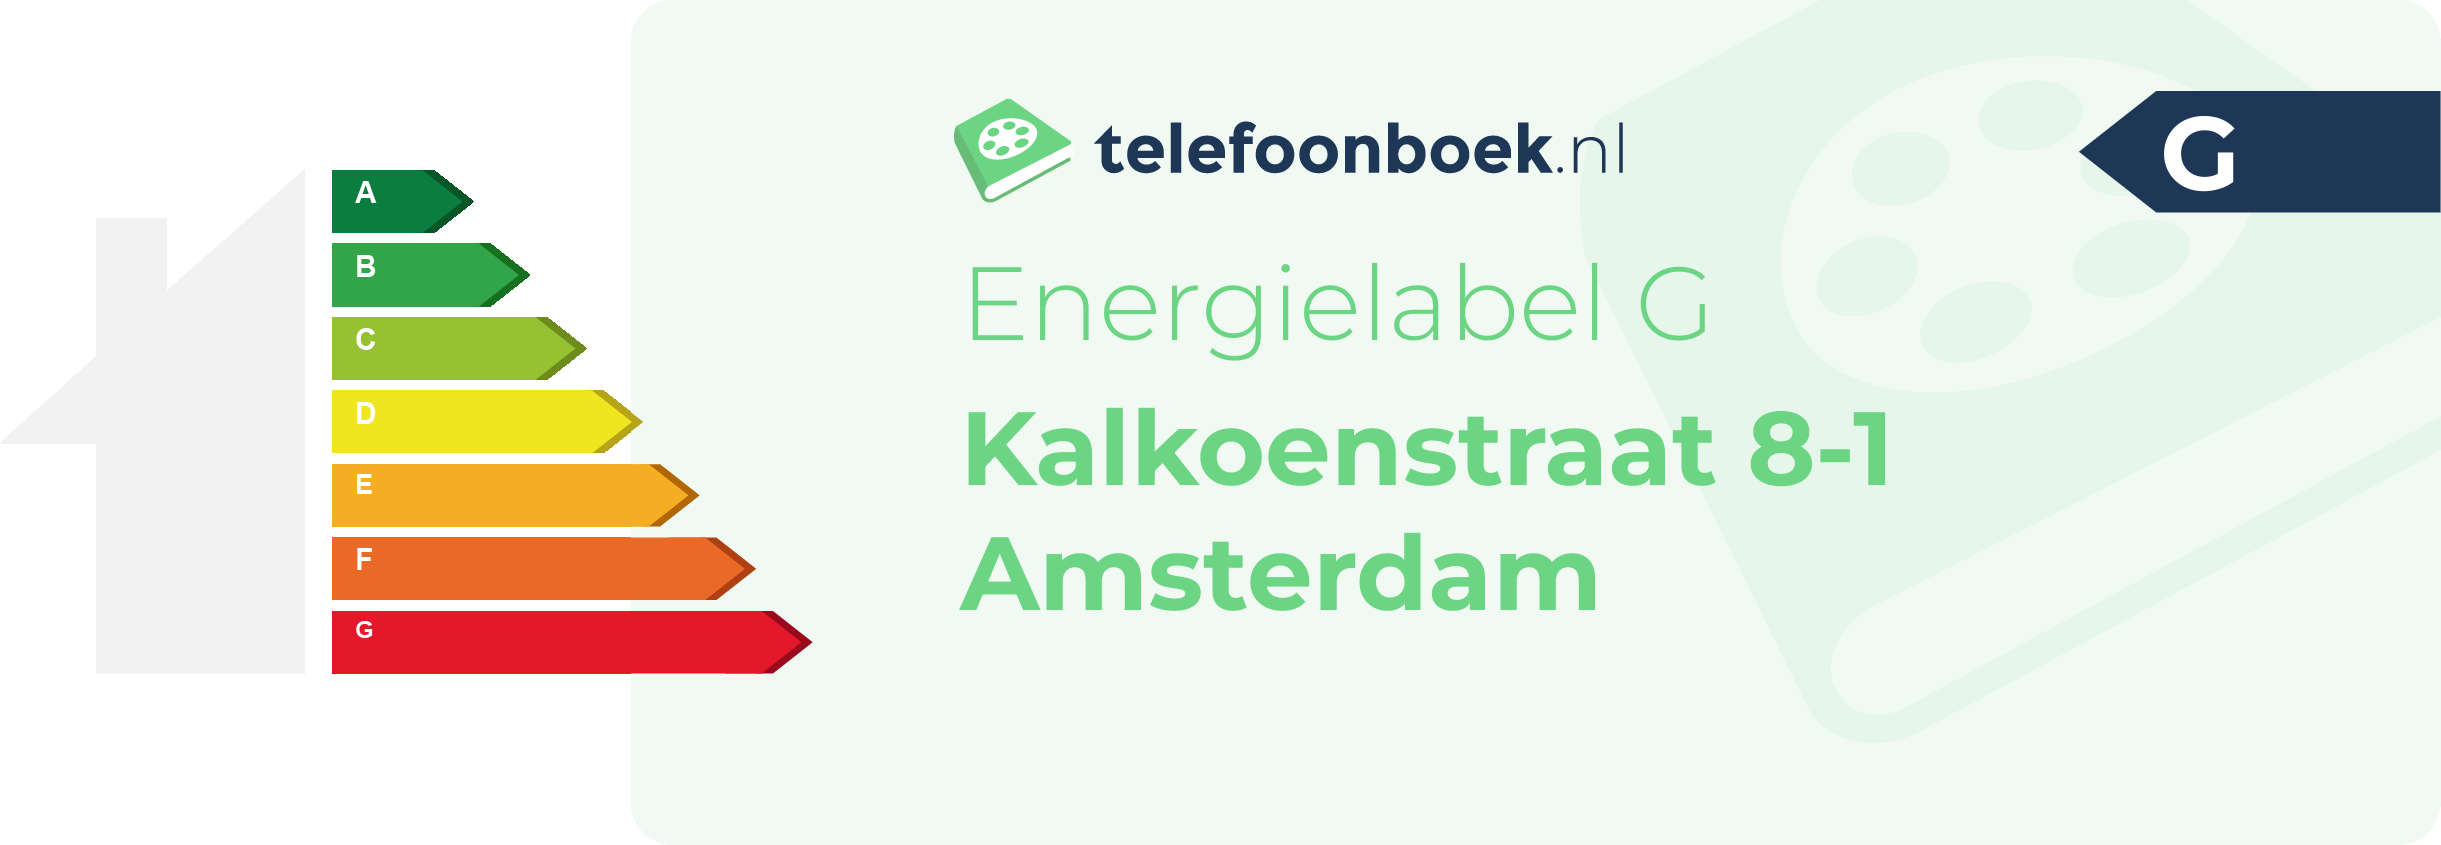 Energielabel Kalkoenstraat 8-1 Amsterdam